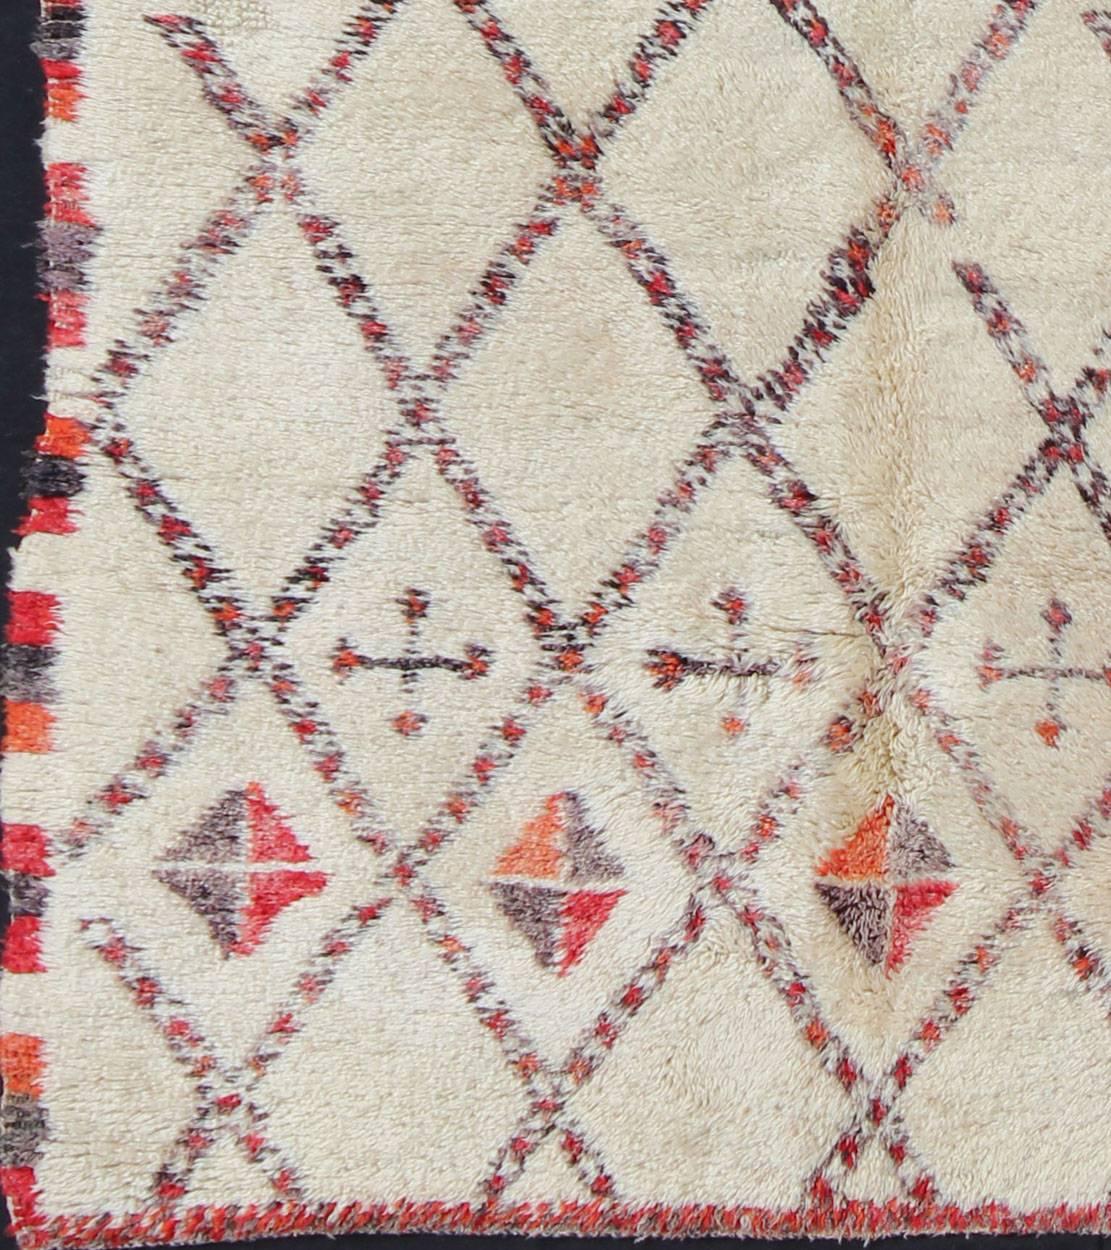 Mesures : 6'5'' x 11'7''.
Tissé en laine légère, crémeuse et filée à la main, avec des symboles rouges, gris et anthracite clair, ce magnifique tapis marocain présente un motif de grille sophistiqué à base de losanges qui englobe la totalité du